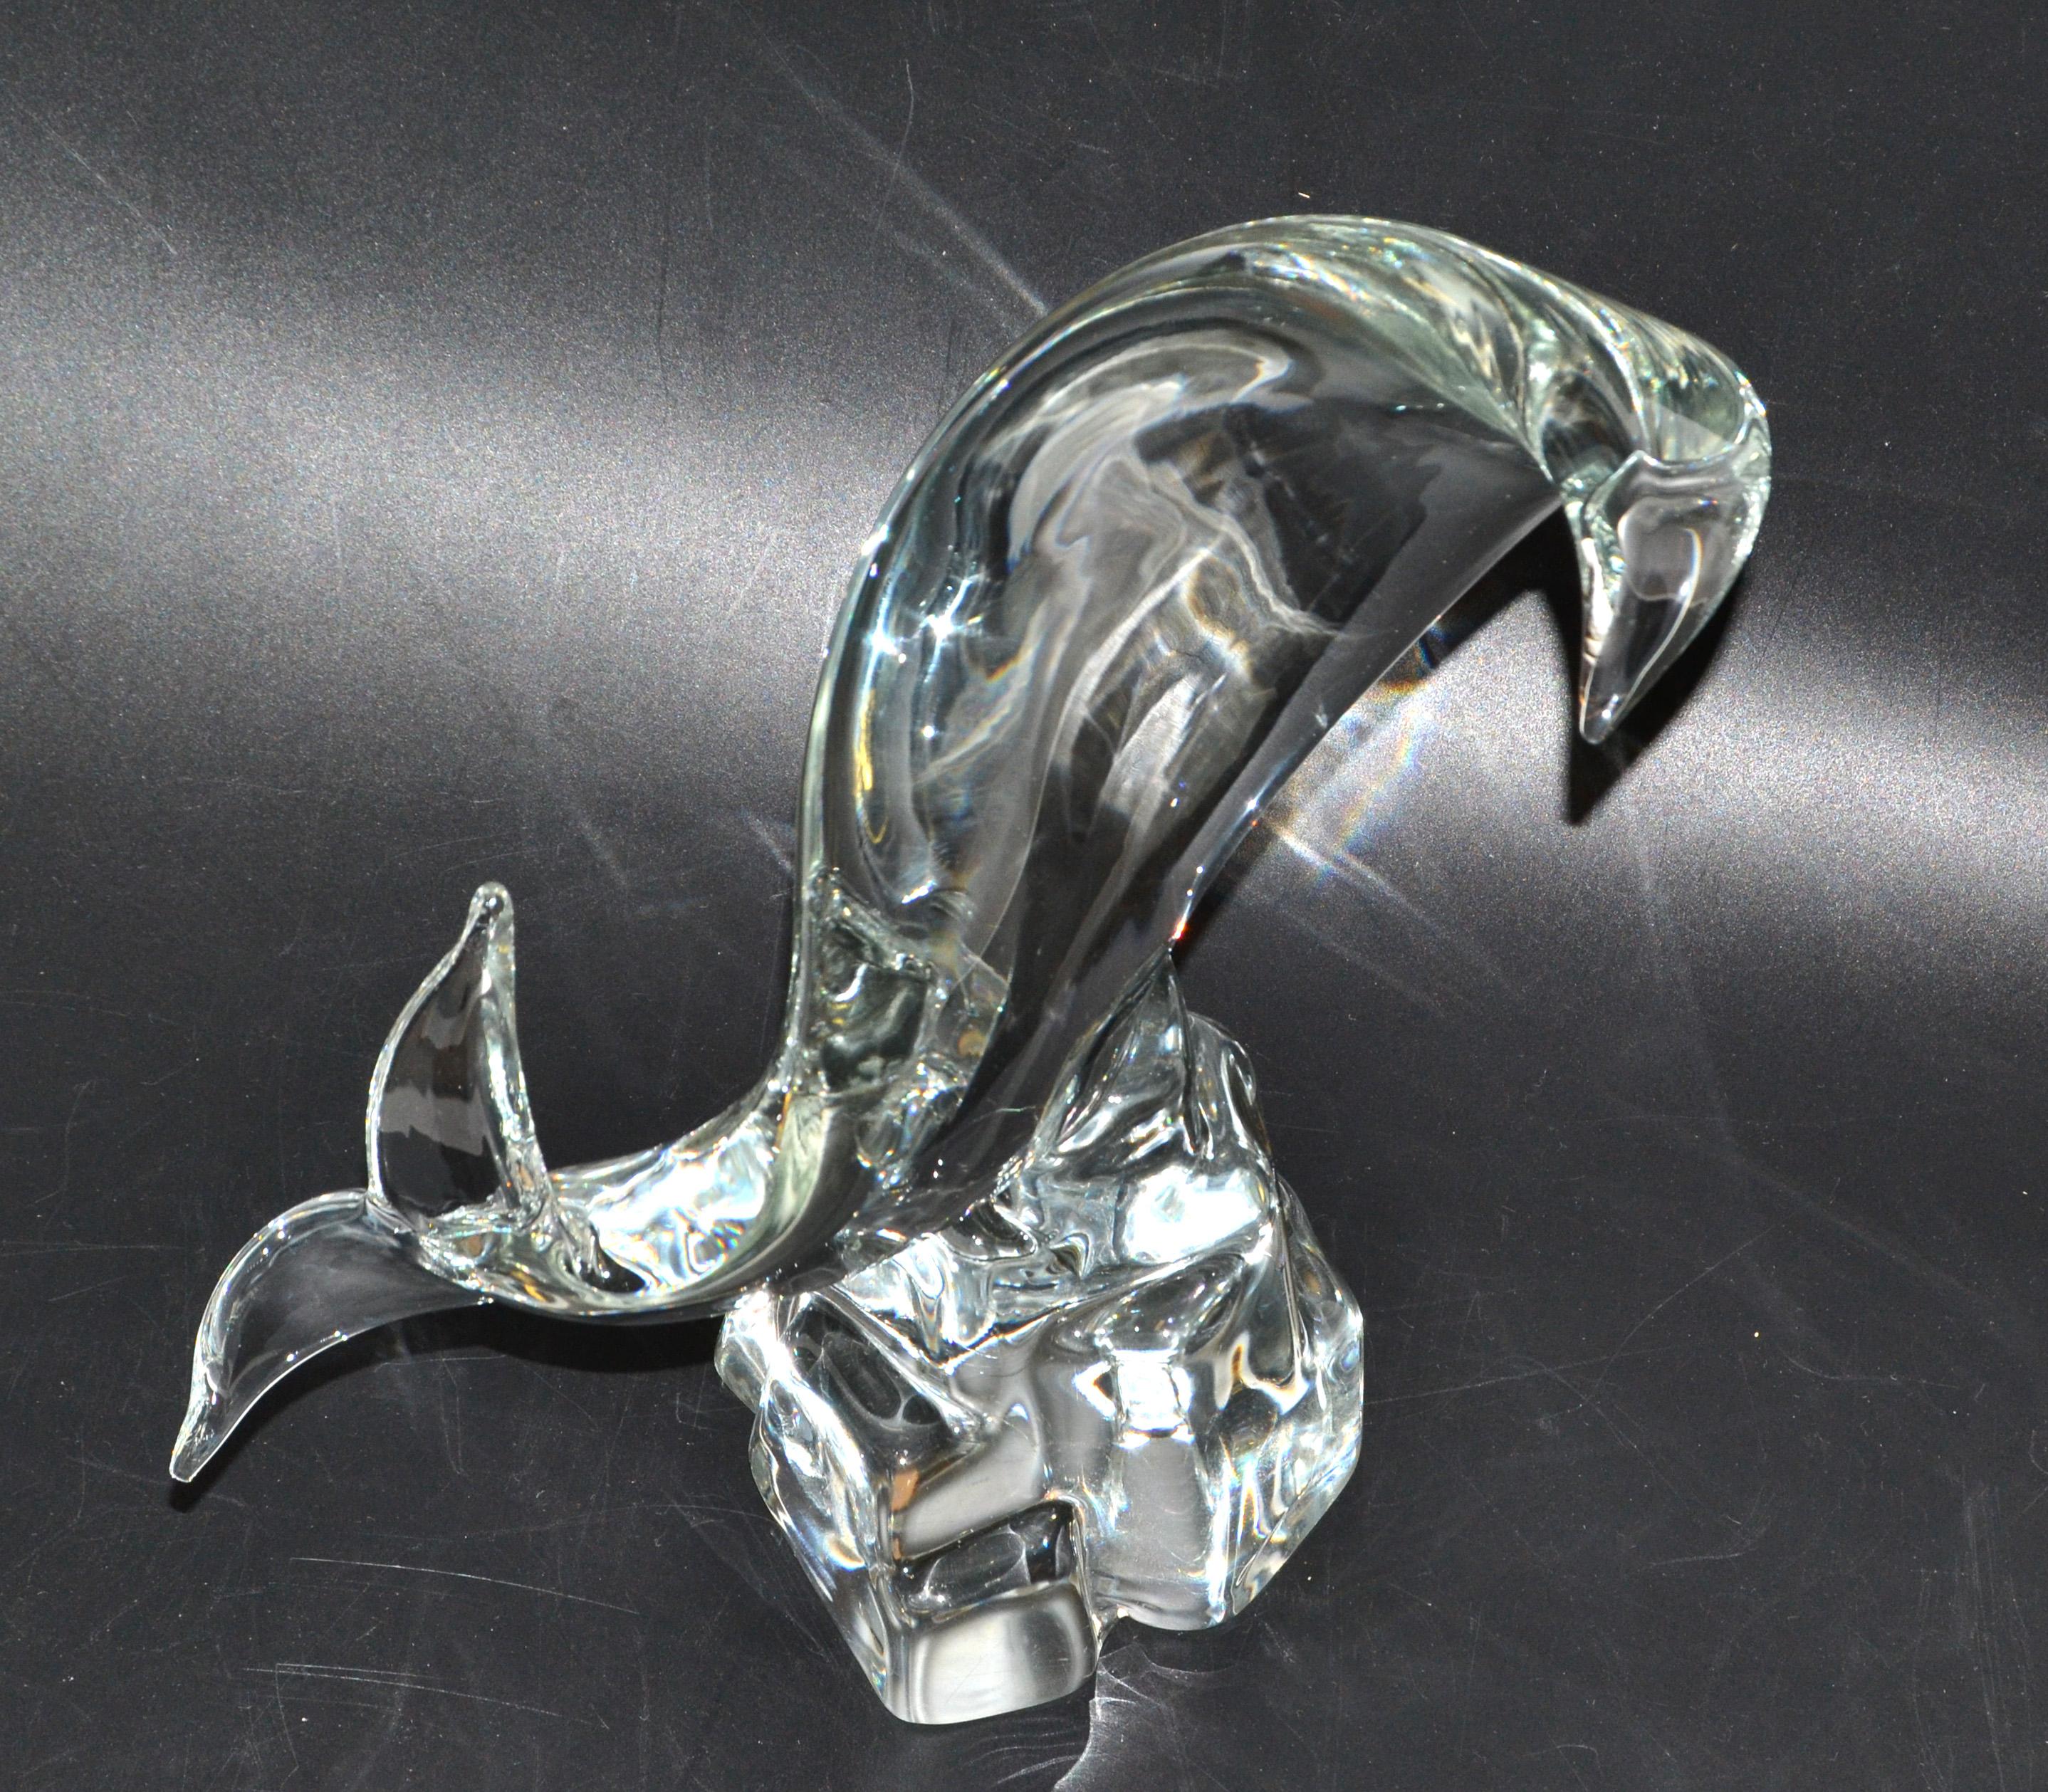 Sculpture abstraite en verre de Murano de Licio Zanetti : poisson, baleine ou dauphin stylisés sur un rocher en verre sculpté à la main.
Réalisé selon la technique Massello, mise au point par Flavio Poli dans les années 1920, à partir d'un seul